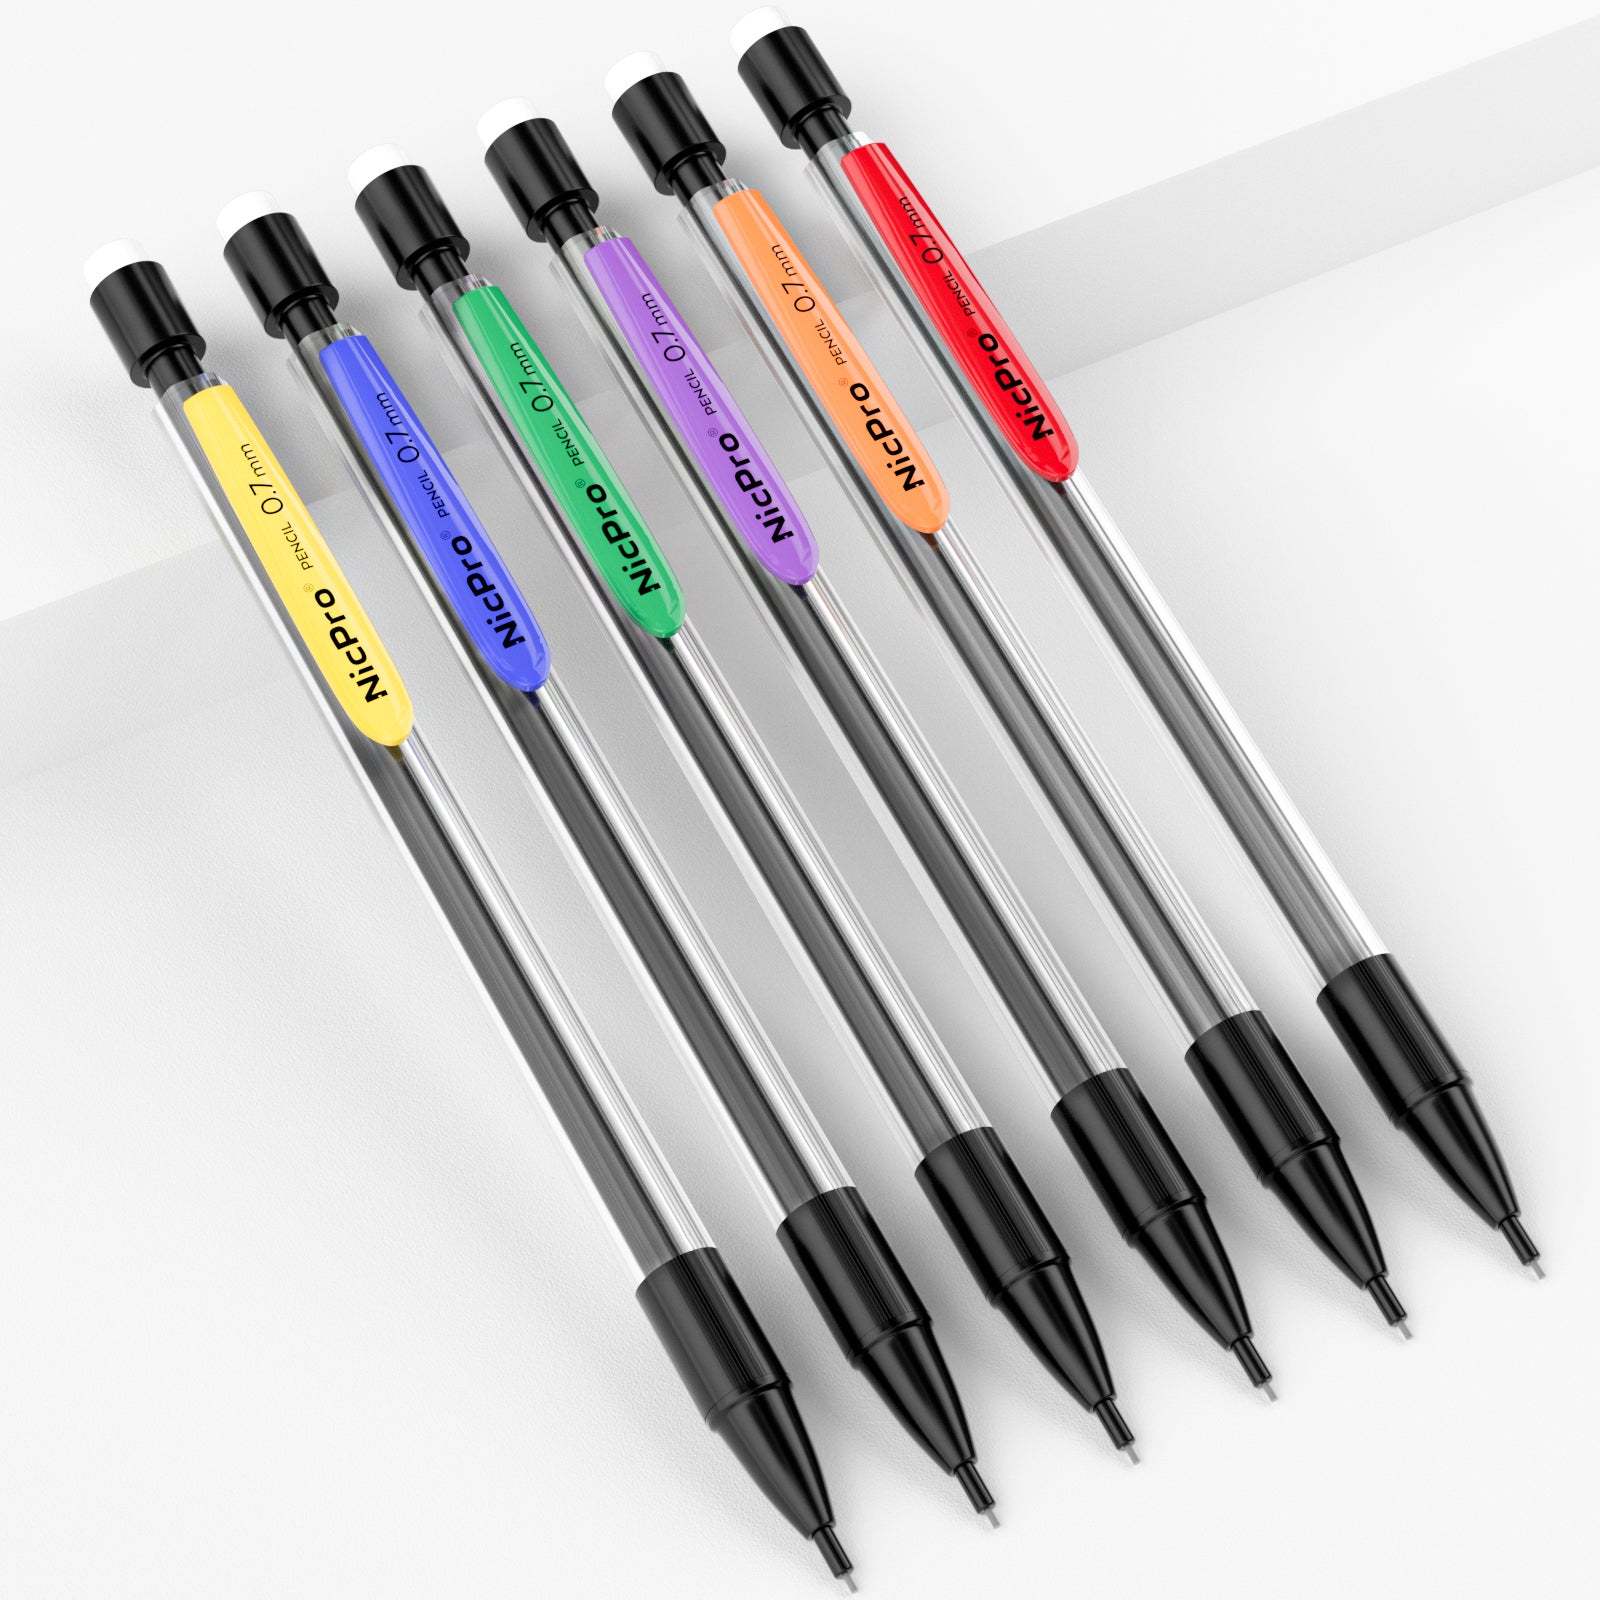 Nicpro 6 PCS 0.7 mm Mechanical Pencil Set, Color Pencil Clips Design D